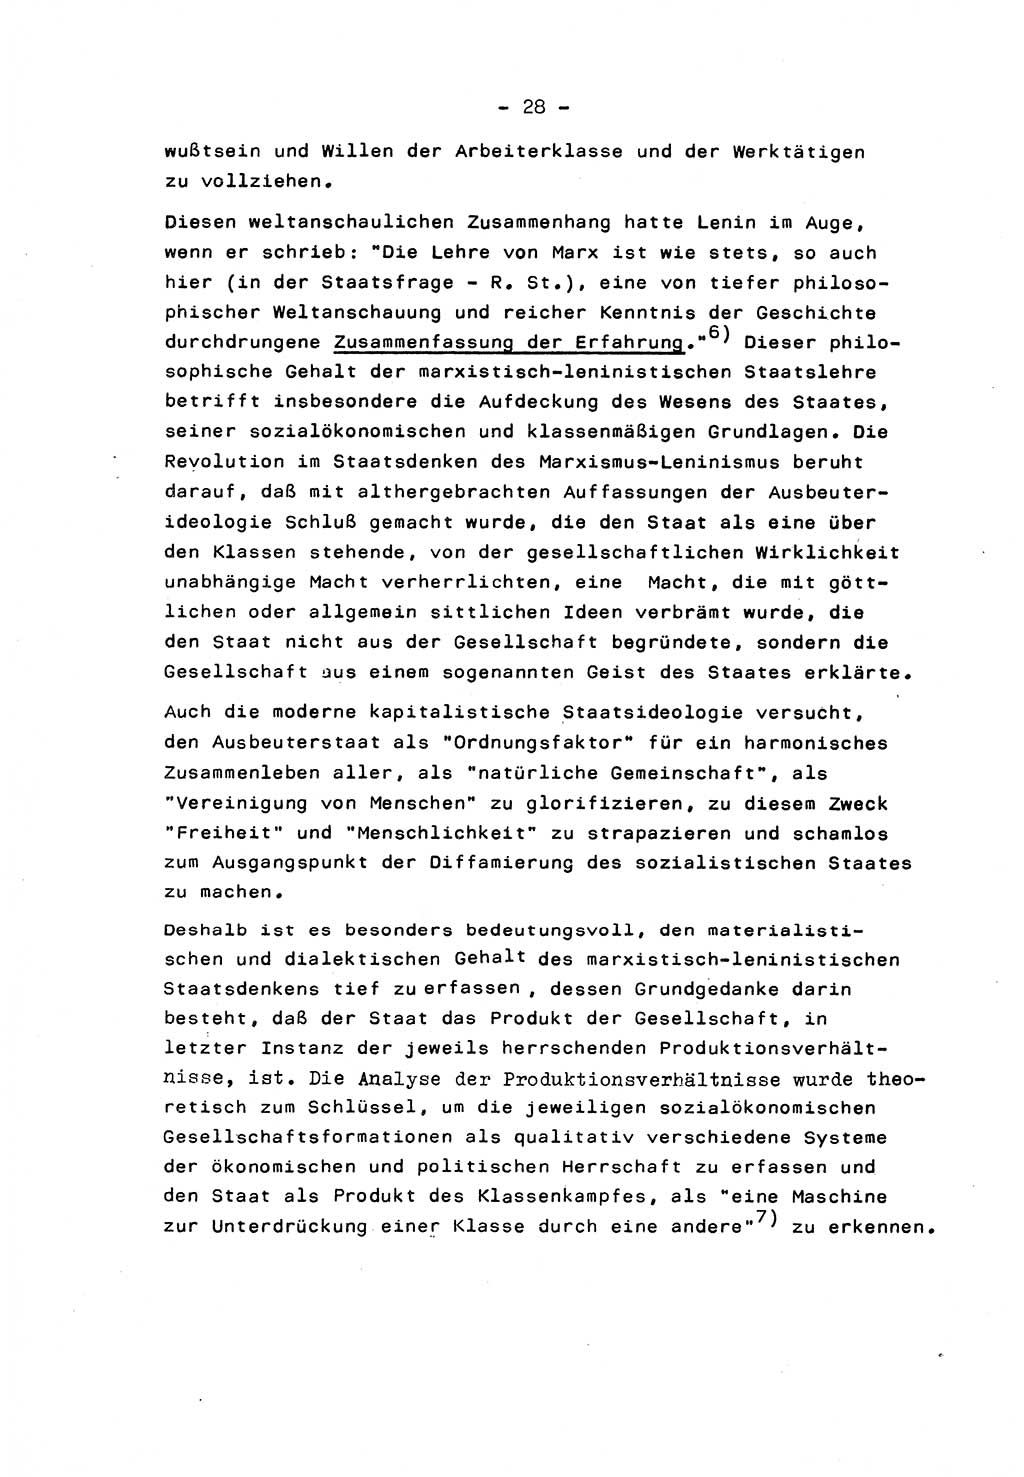 Marxistisch-leninistische Staats- und Rechtstheorie [Deutsche Demokratische Republik (DDR)] 1975, Seite 28 (ML St.-R.-Th. DDR 1975, S. 28)